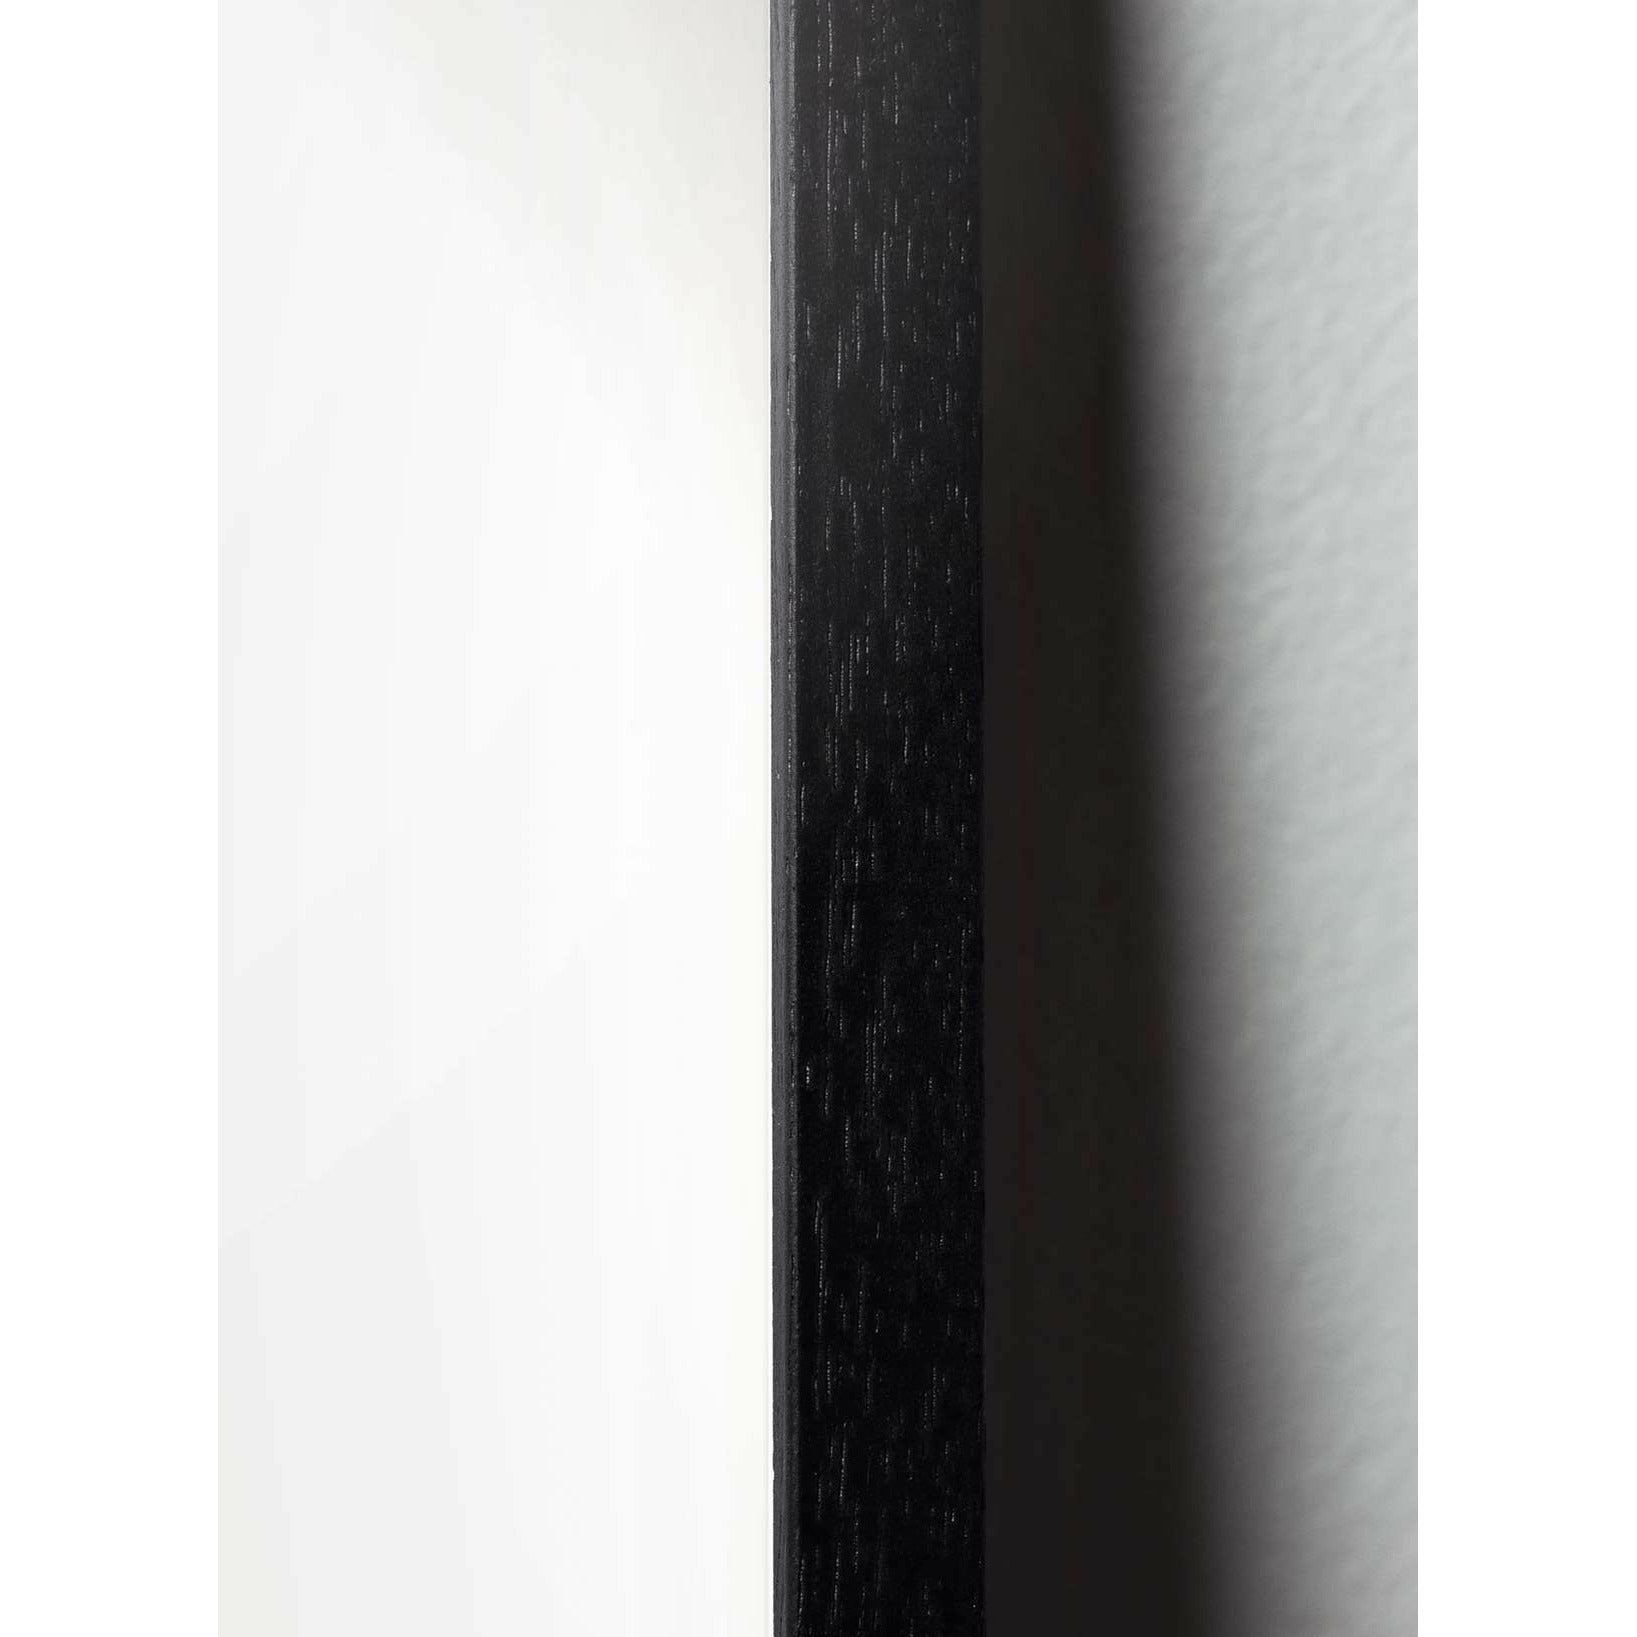 brainchild Poster Classic Caster Cone, cadre en bois laqué noir 30x40 cm, fond jaune